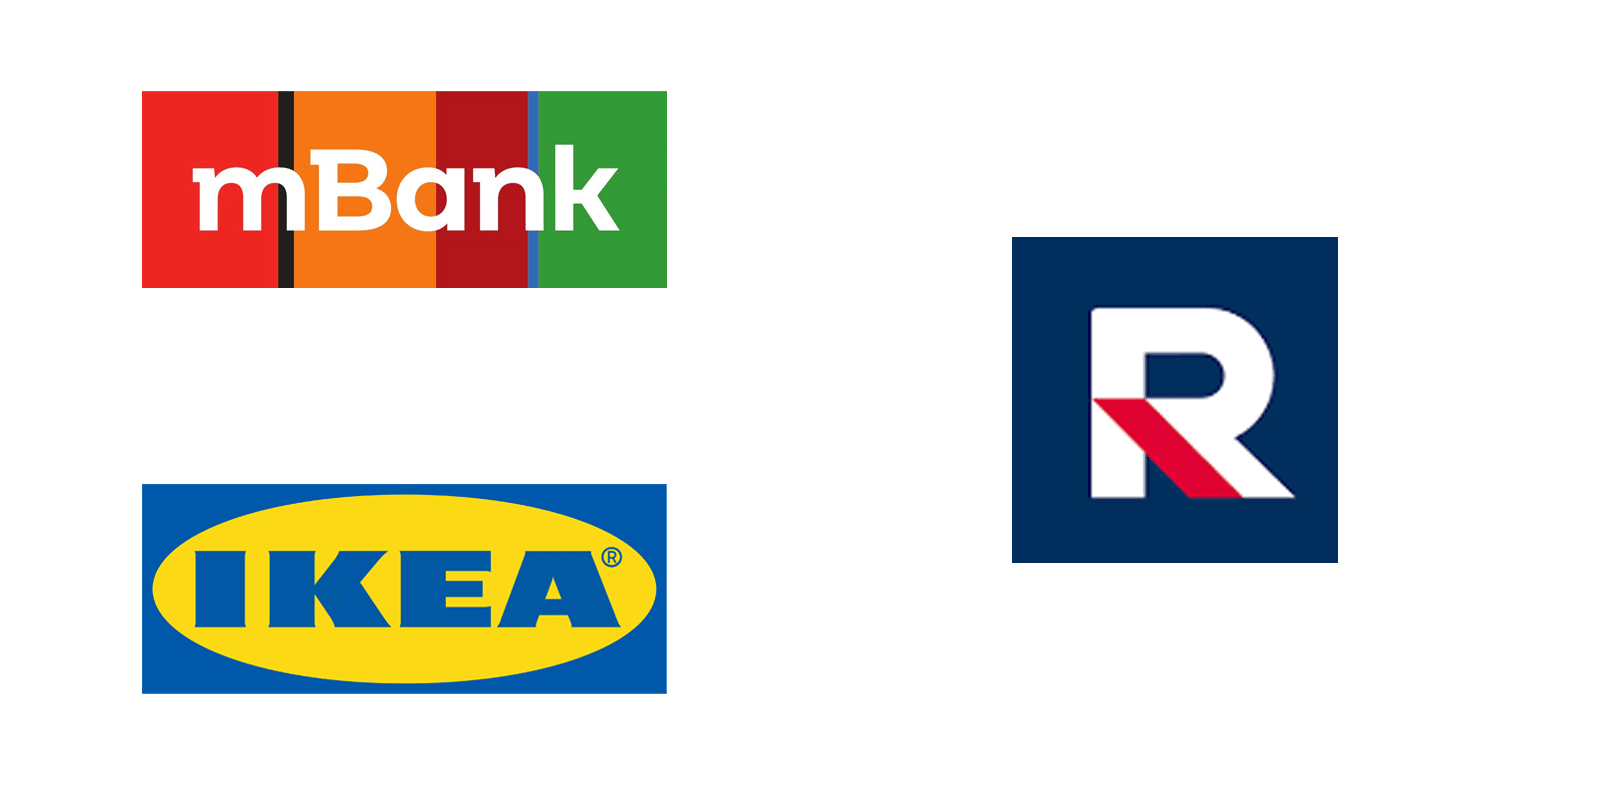 Ikea Polska i mBank wstrzymują reklamy w TV Republika po kontrowersyjnych wypowiedziach IKEA MEDIARUN COM MBANK IKEA TV REPUBLIKA V1